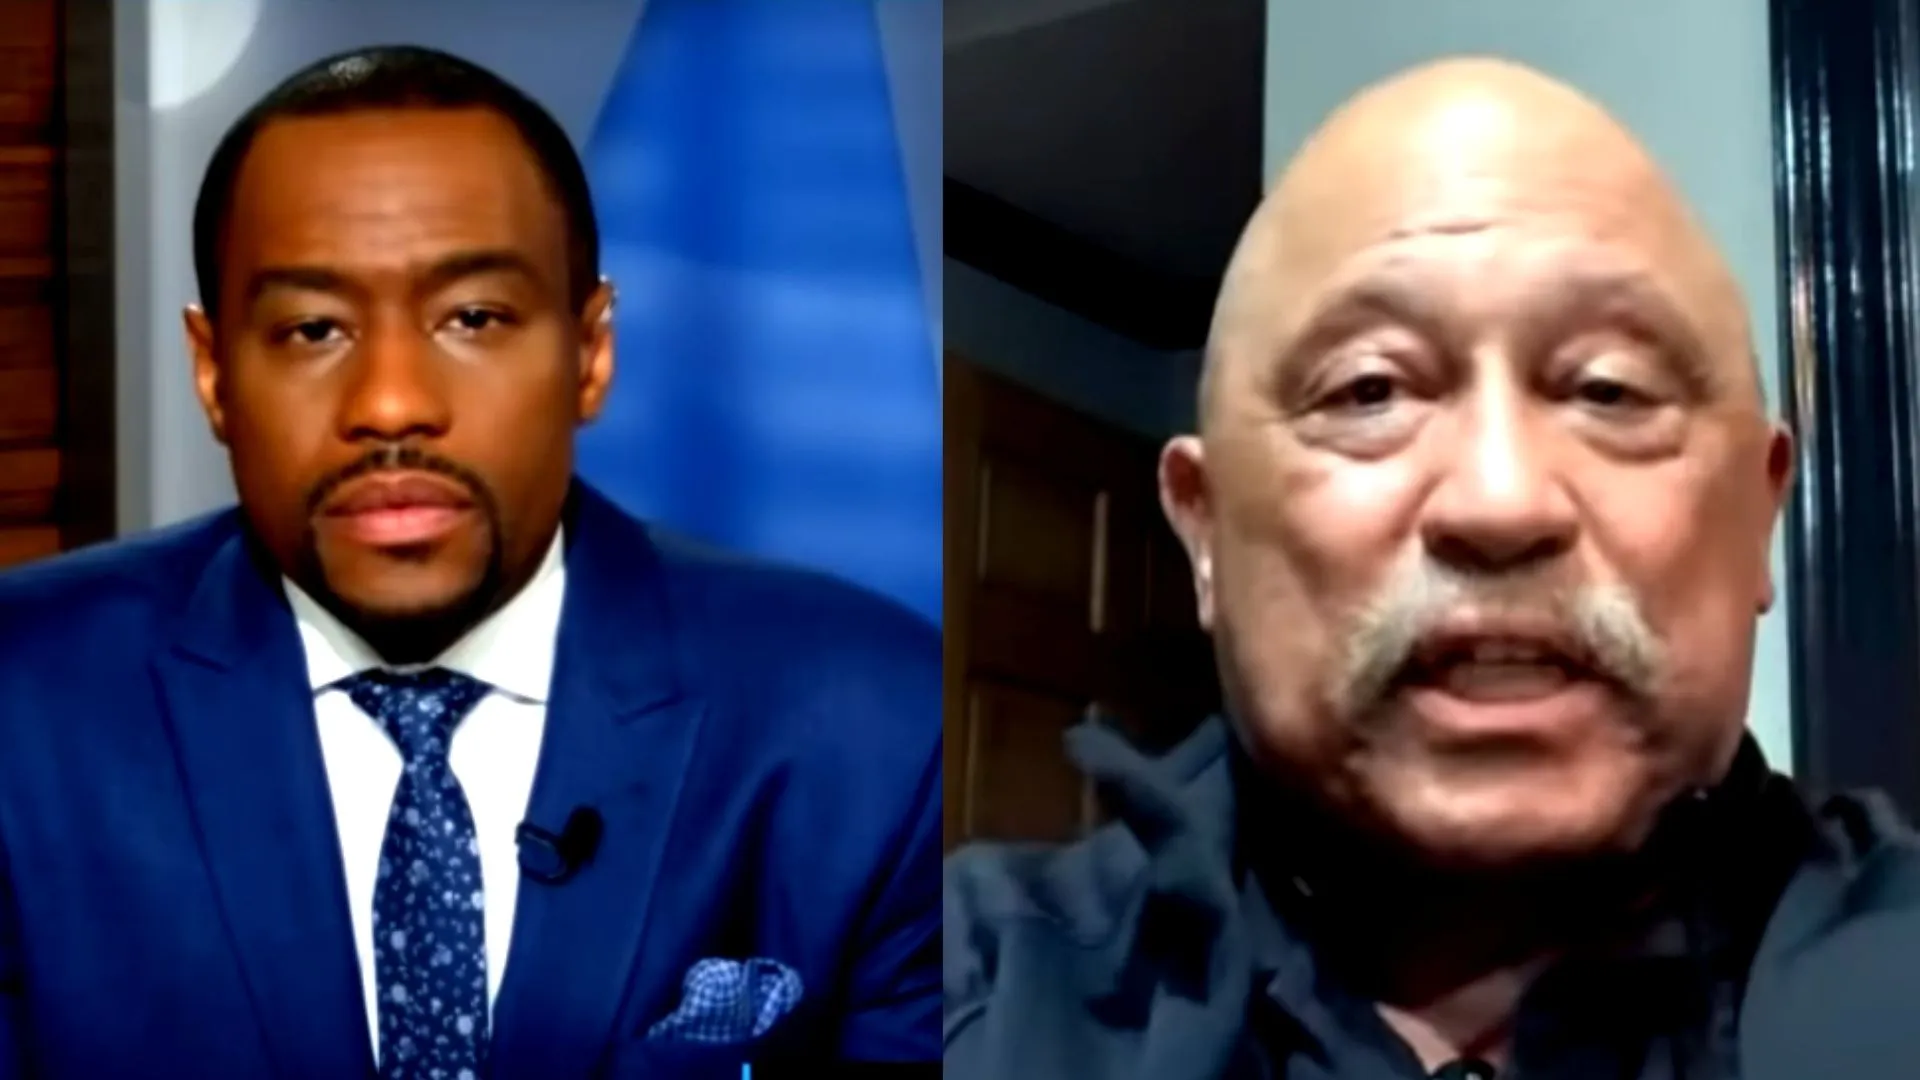 VIDEO: Judge Joe Brown Bill Cosby Accusers “Groupies”